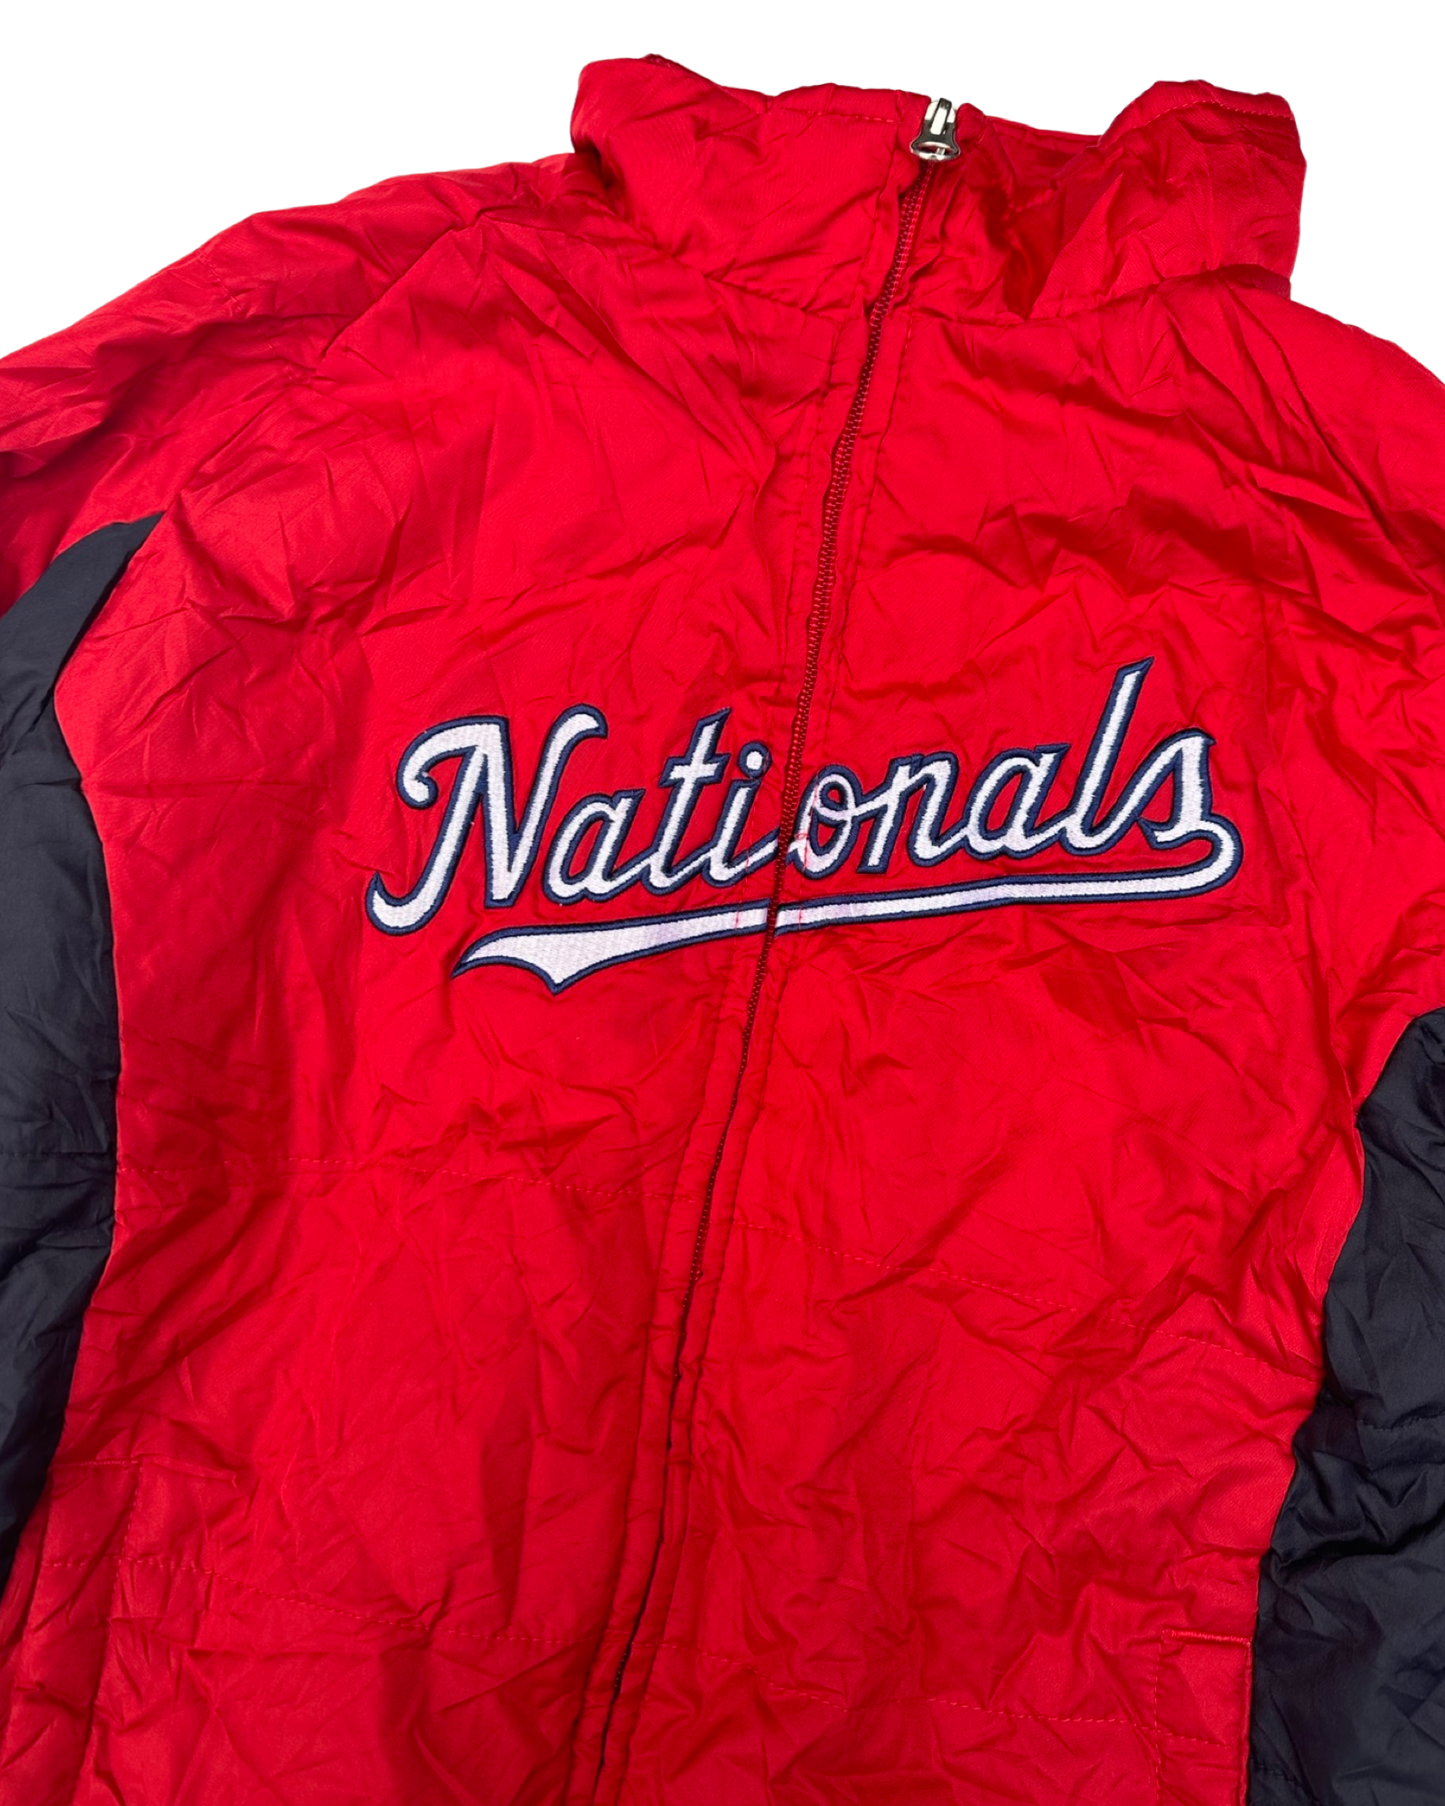 Vintage MLB Washington nationals padded jacket (7-8yrs)